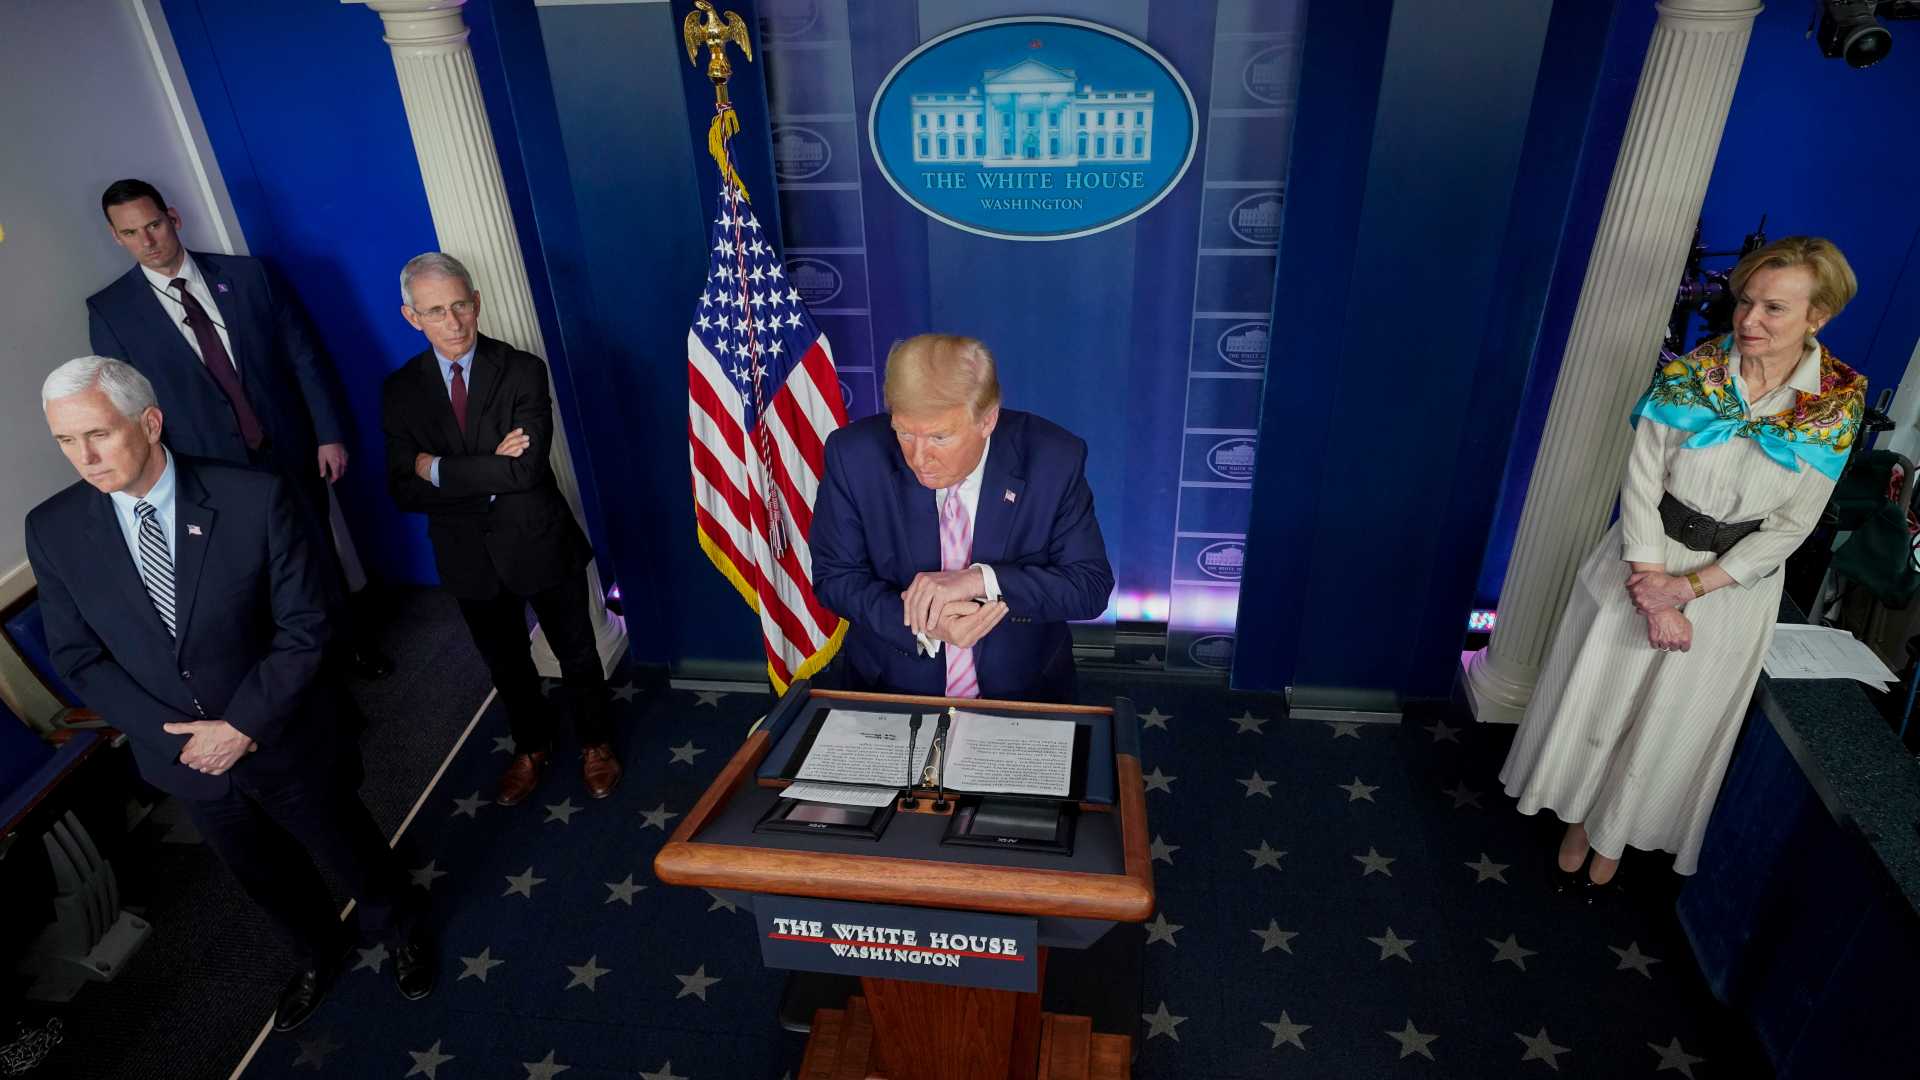 Estados Unidos supera los 300.000 contagios y Trump advierte de que viene un "periodo horroroso"